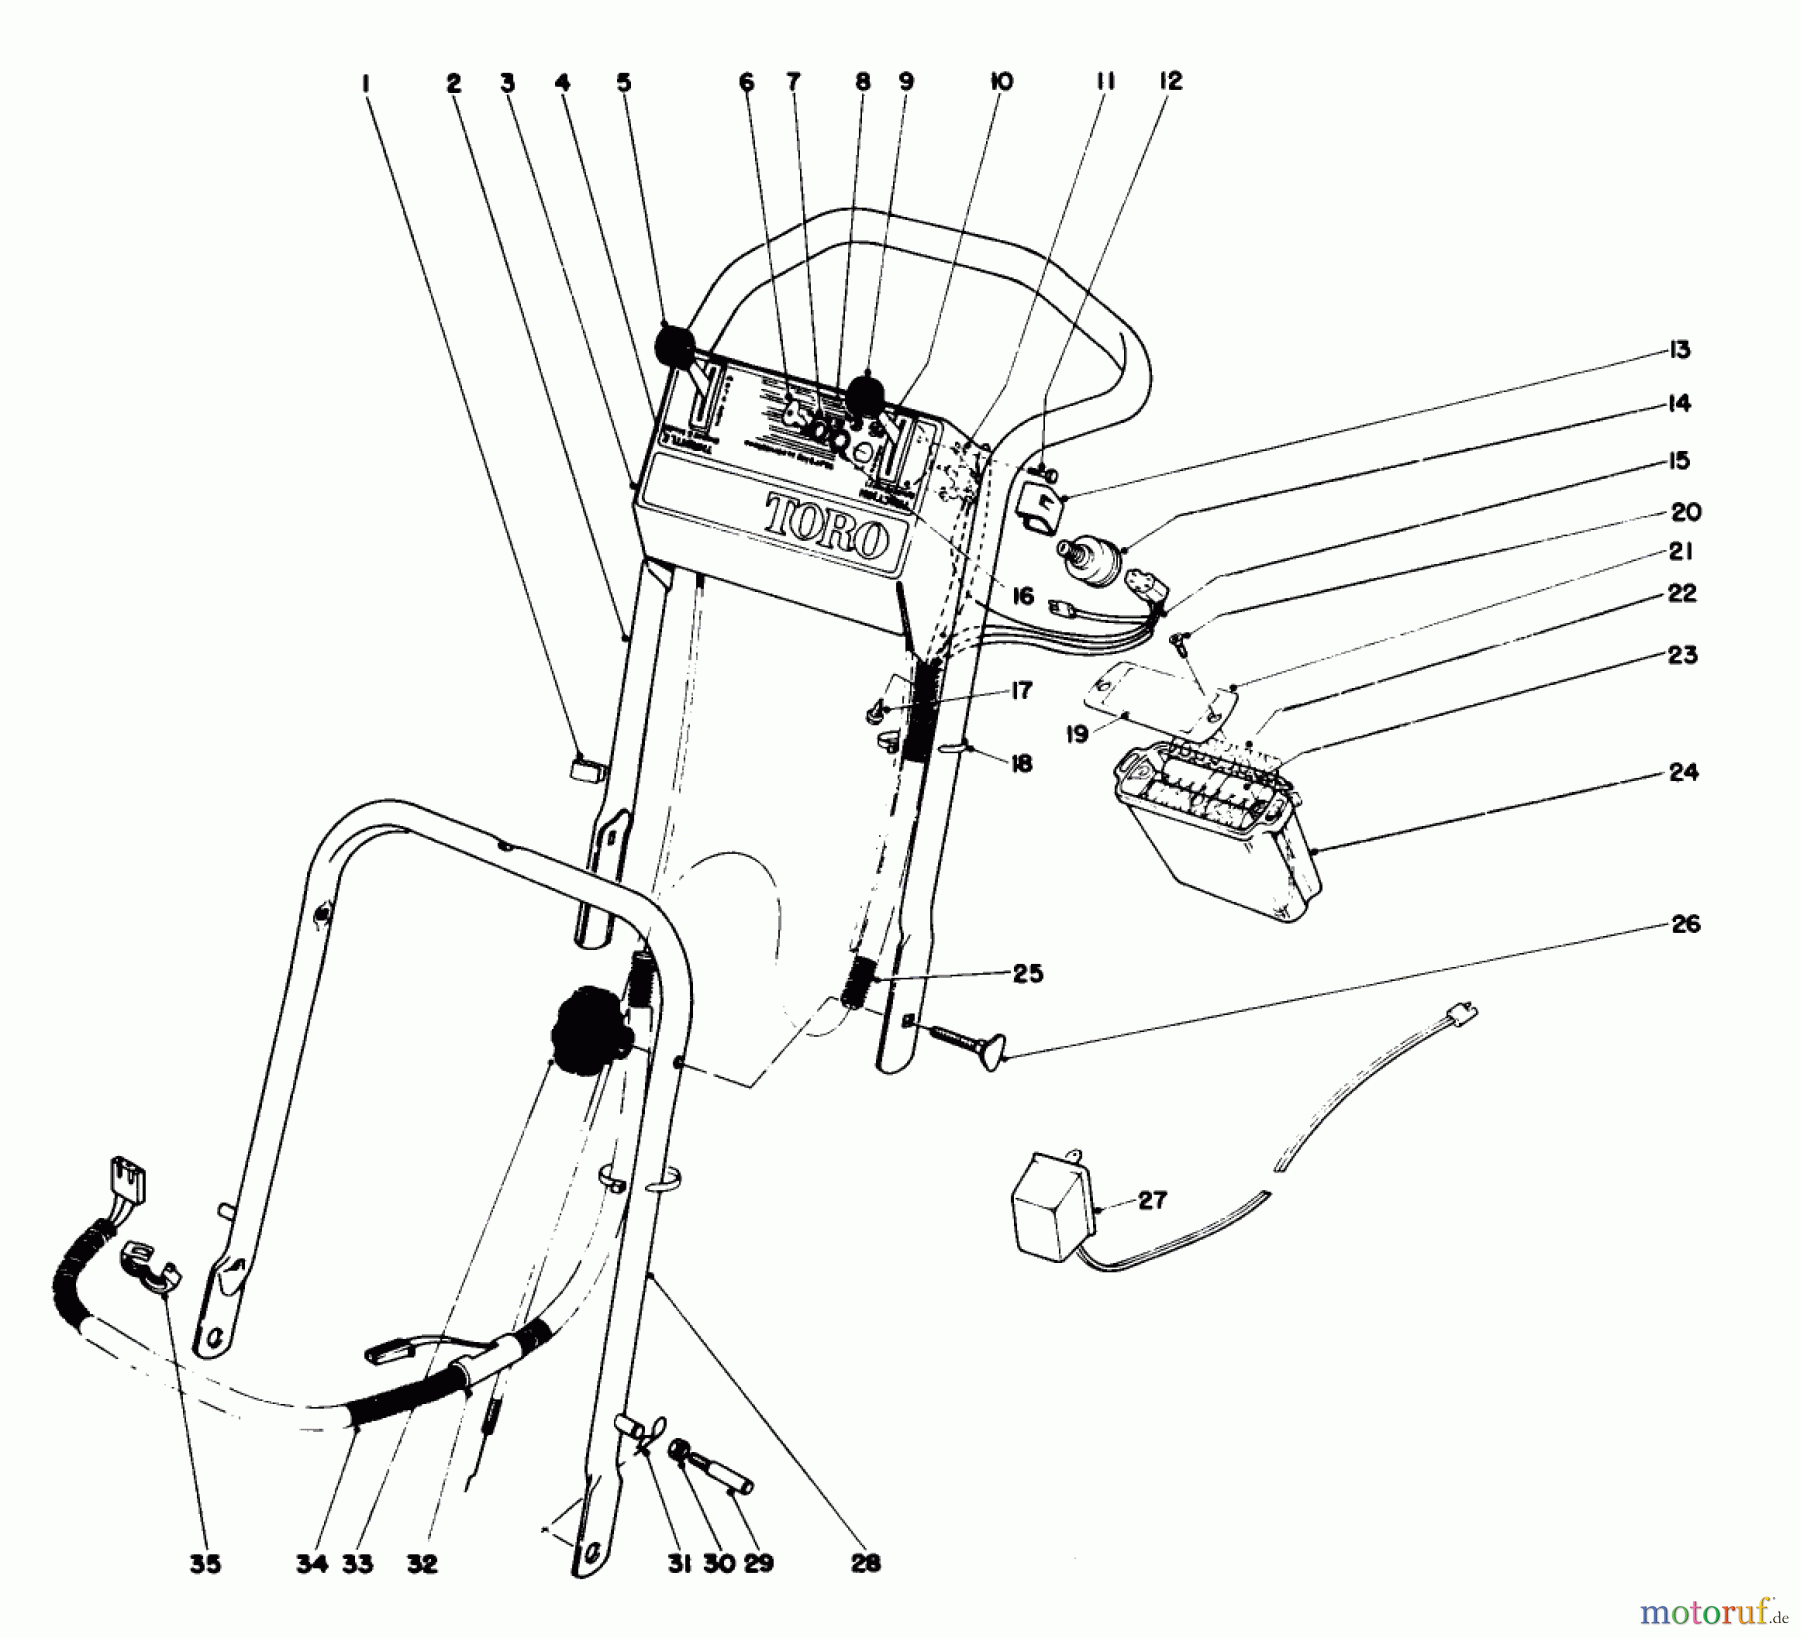  Toro Neu Mowers, Walk-Behind Seite 2 21738 - Toro Whirlwind Lawnmower, 1978 (8000001-8999999) HANDLE ASSEMBLY MODEL NO. 21738